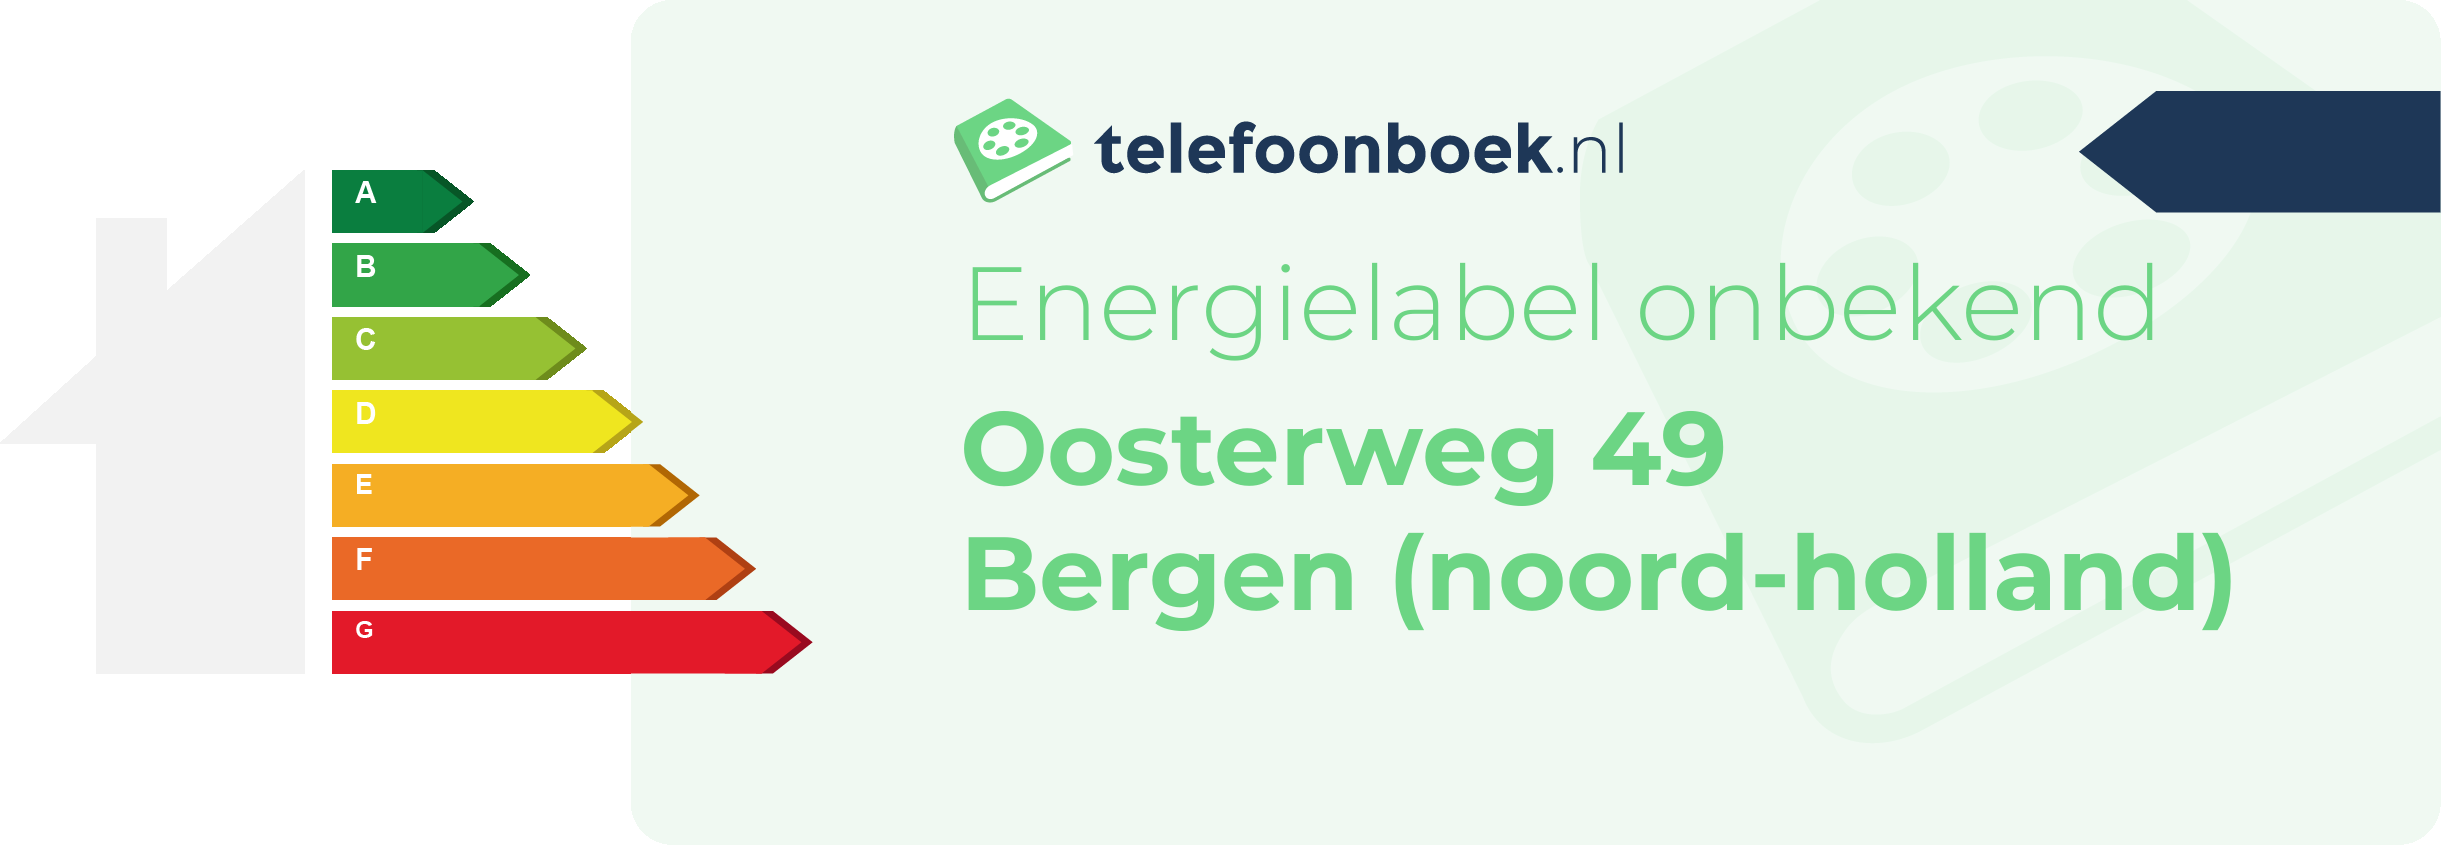 Energielabel Oosterweg 49 Bergen (Noord-Holland)